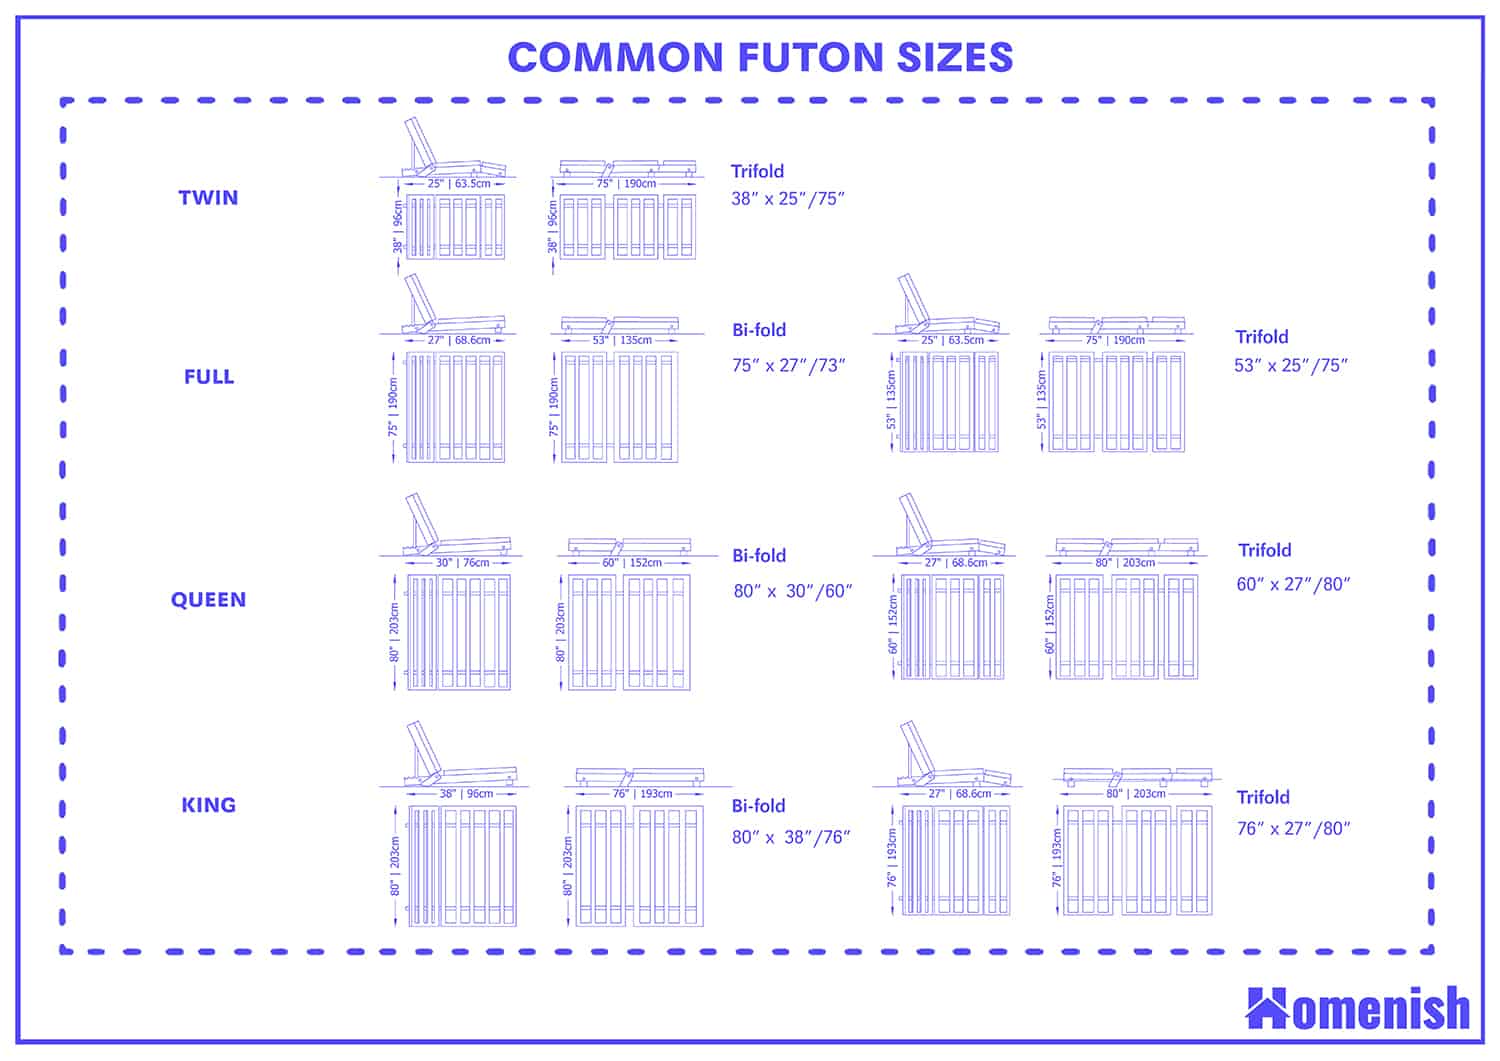 futon mattress sizes in inches